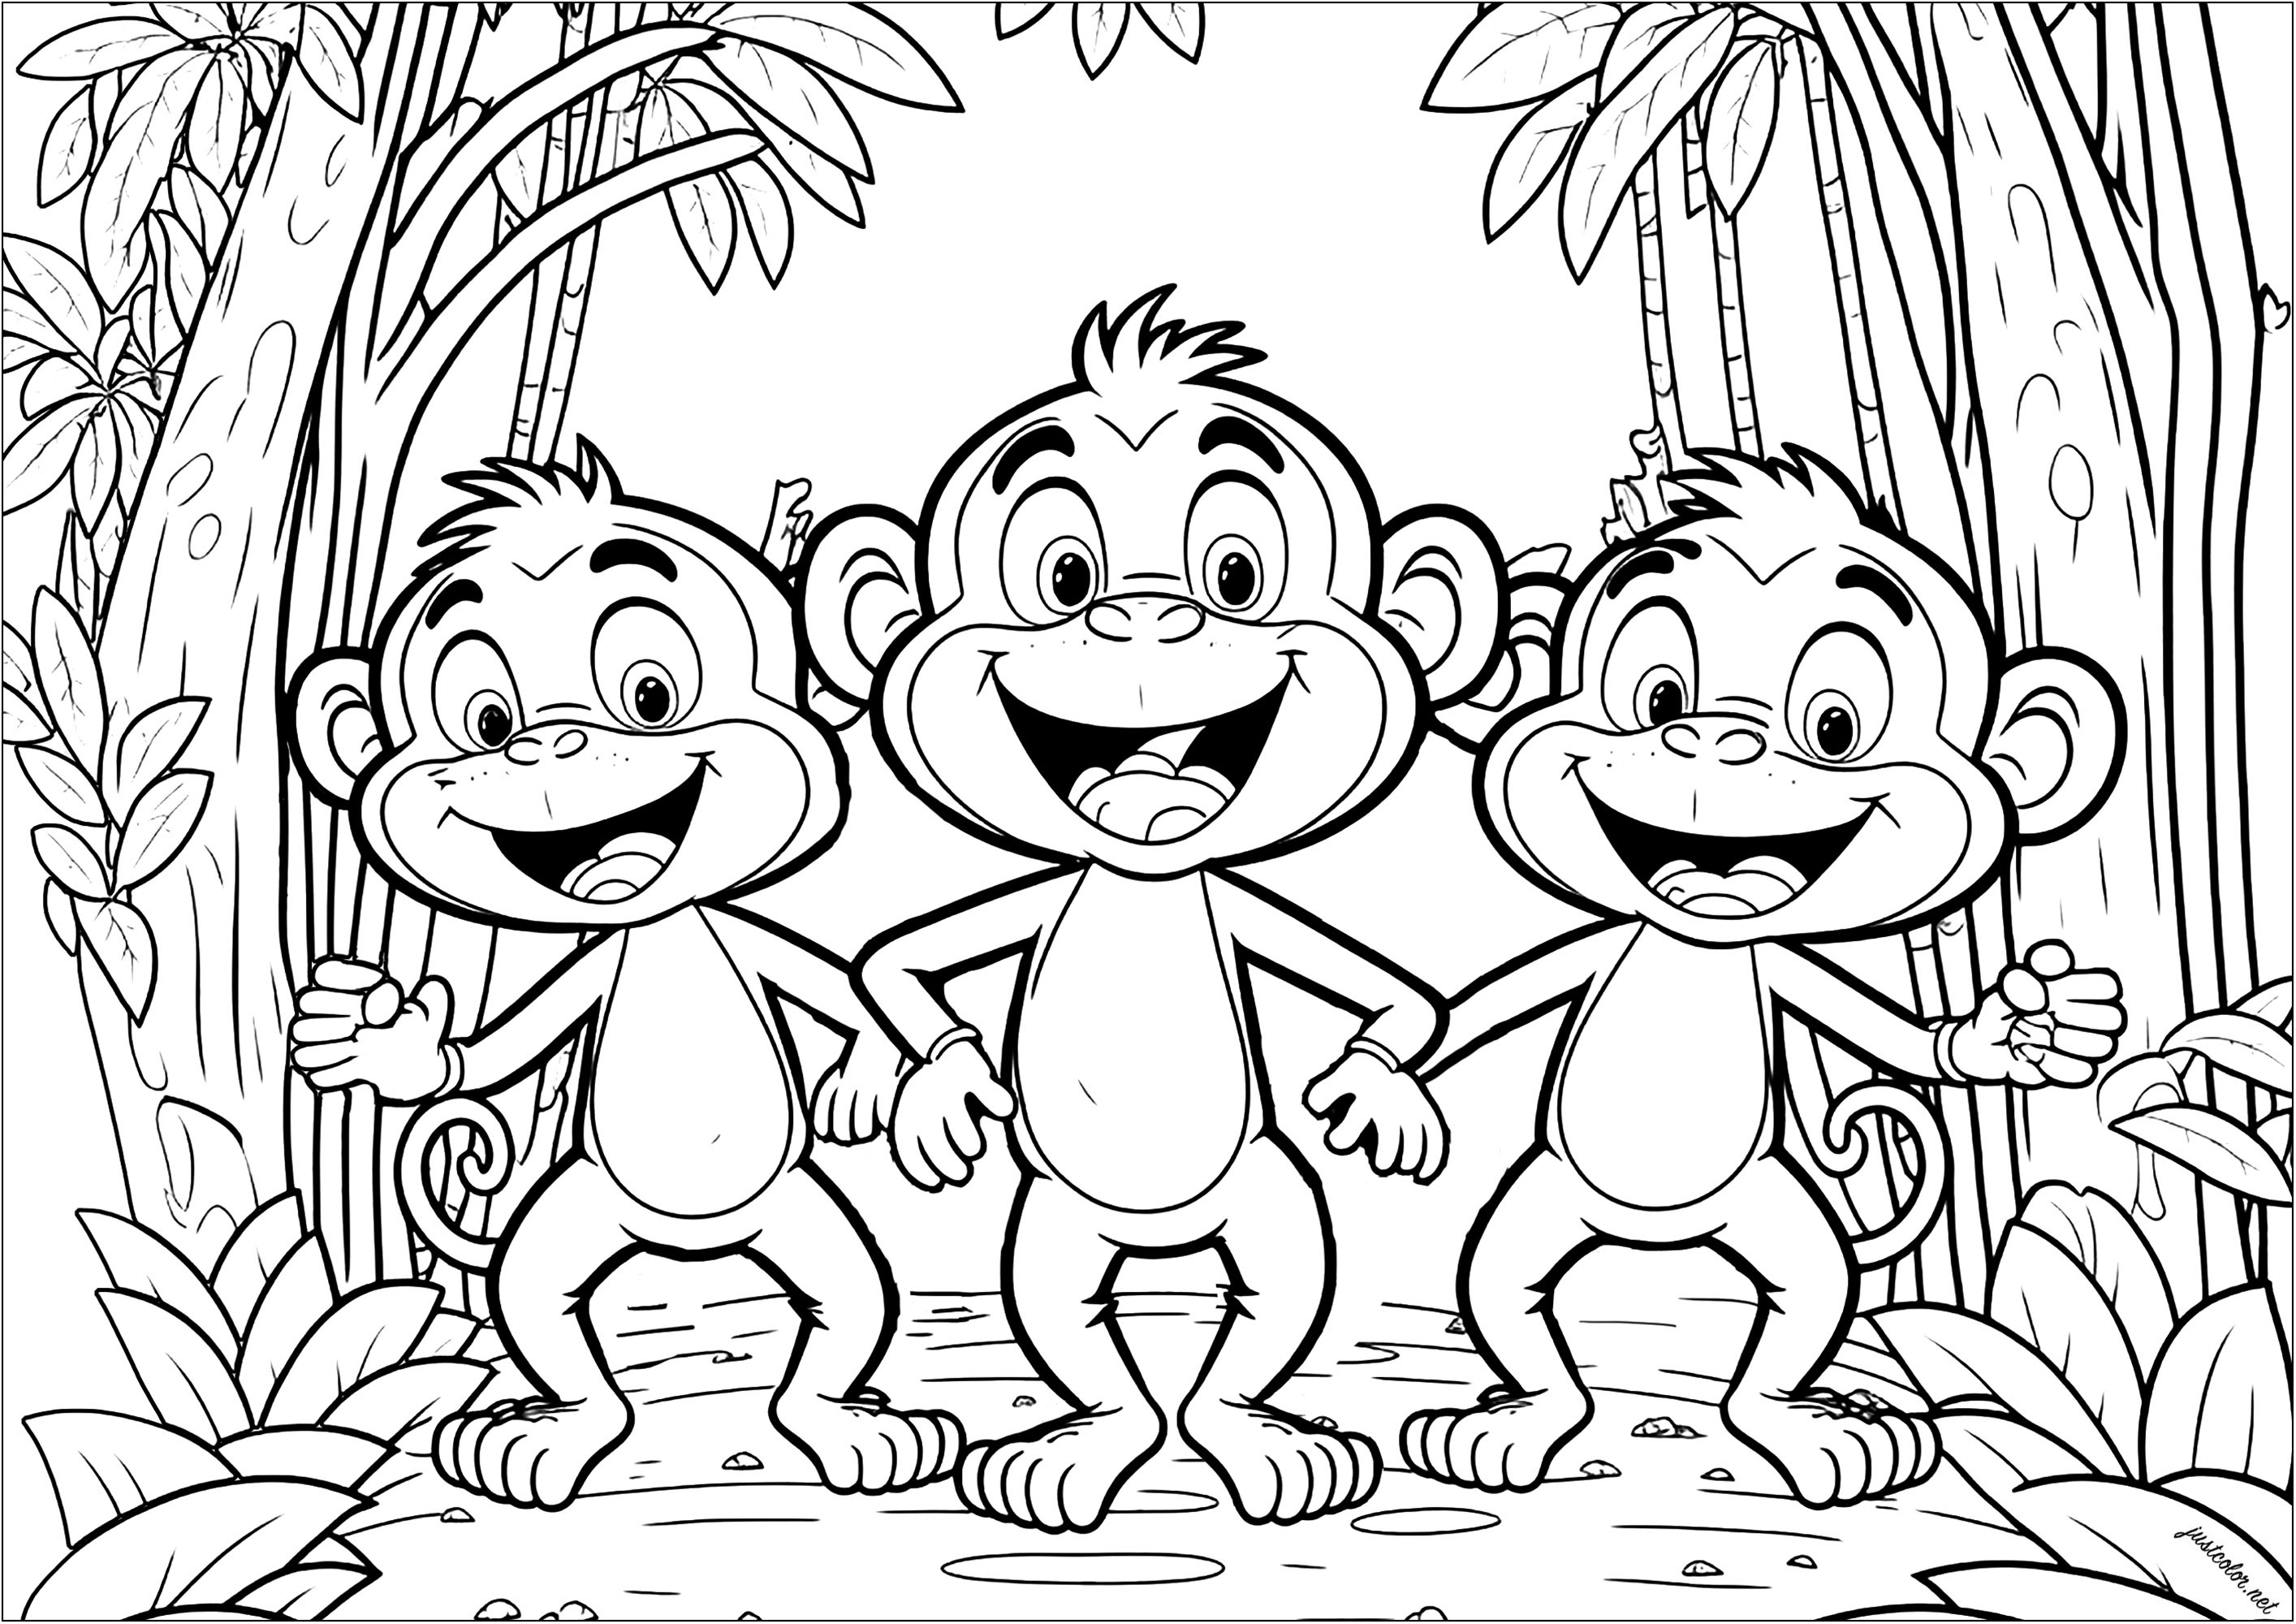 Trois drôles de singes à colorier. Ces primates ont un aspect très enfantin, mais c'est un coloriage rendu assez complexe grâce à la végétation en arrière-plan